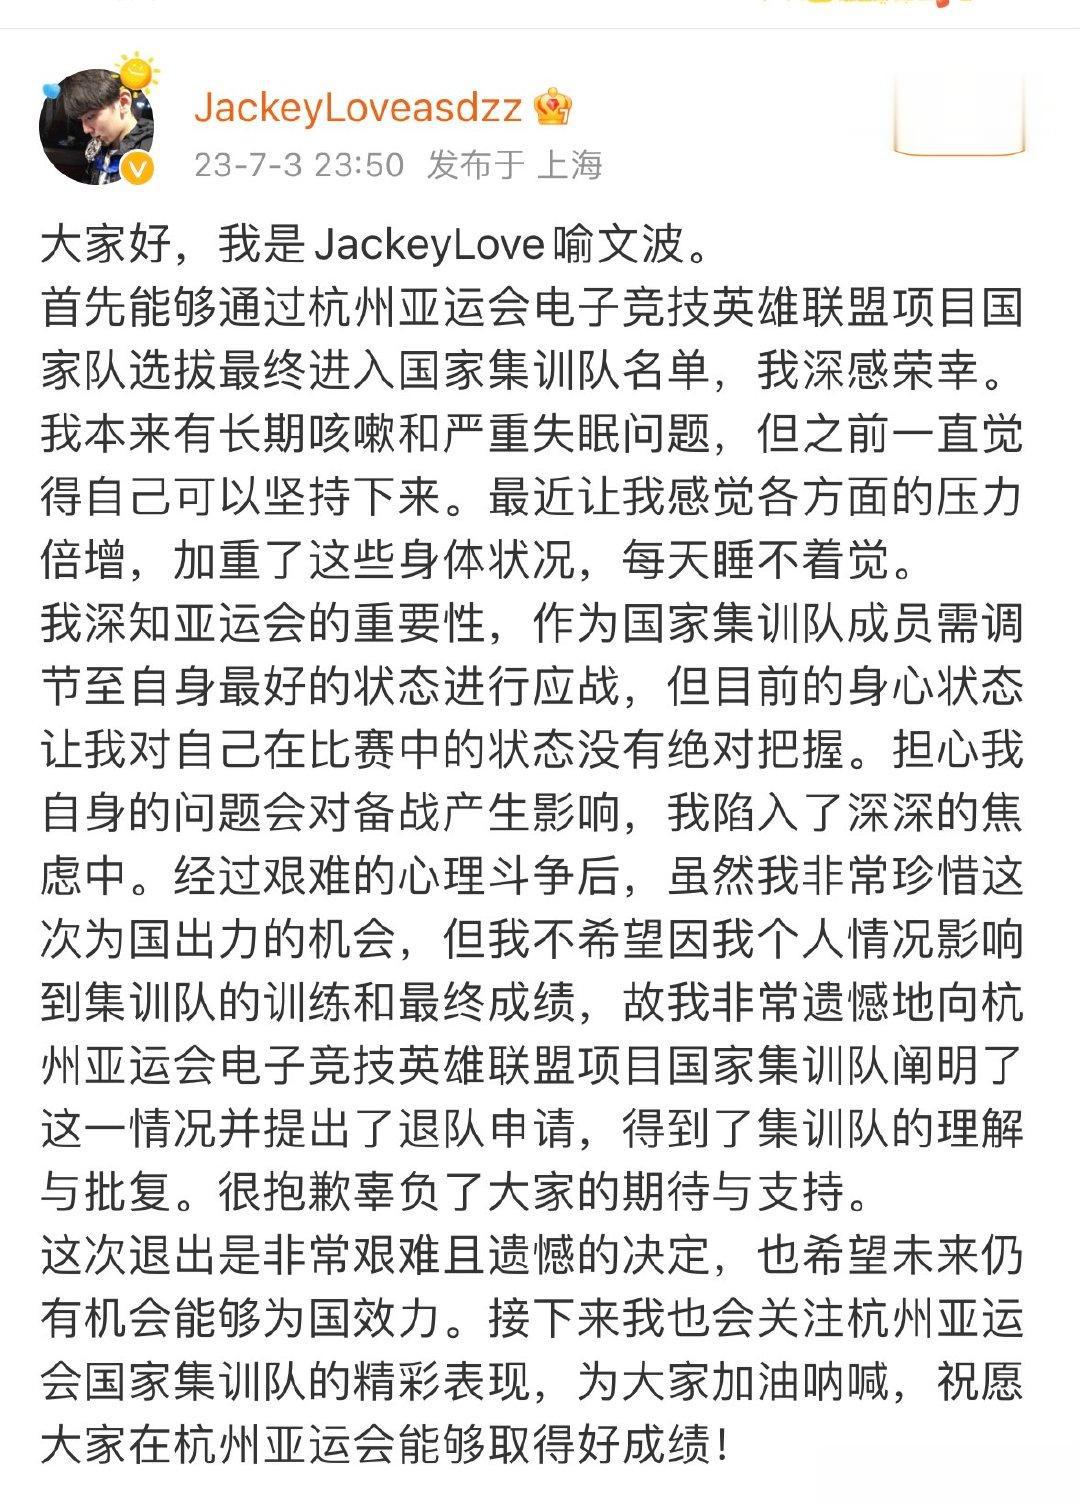 #JackeyLove退出亚运会集训队##jackeylove369退出亚运会集